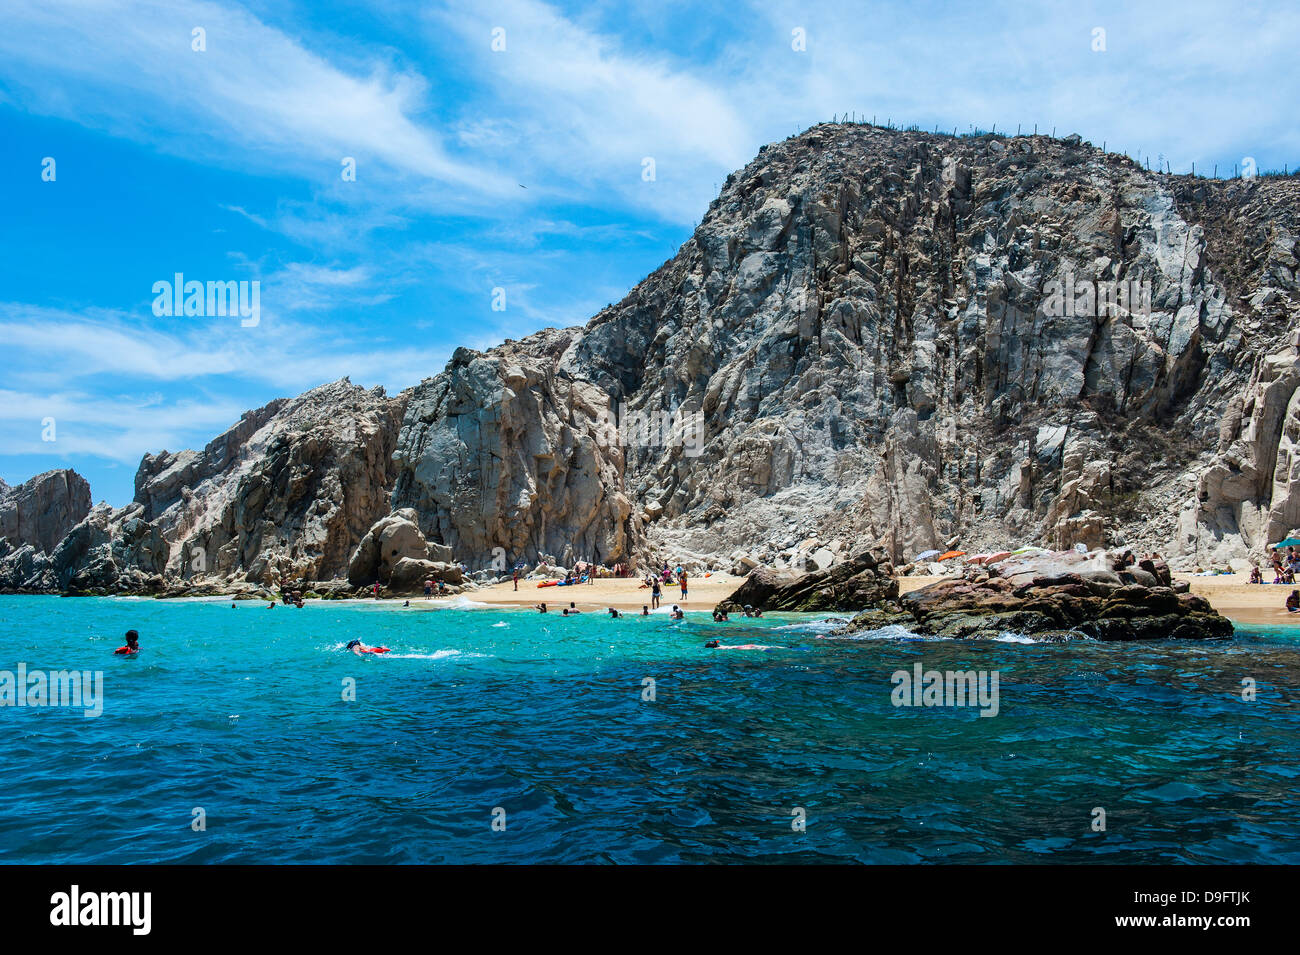 Lands End rock formation, Los Cabos, Baja California, Mexico Stock Photo